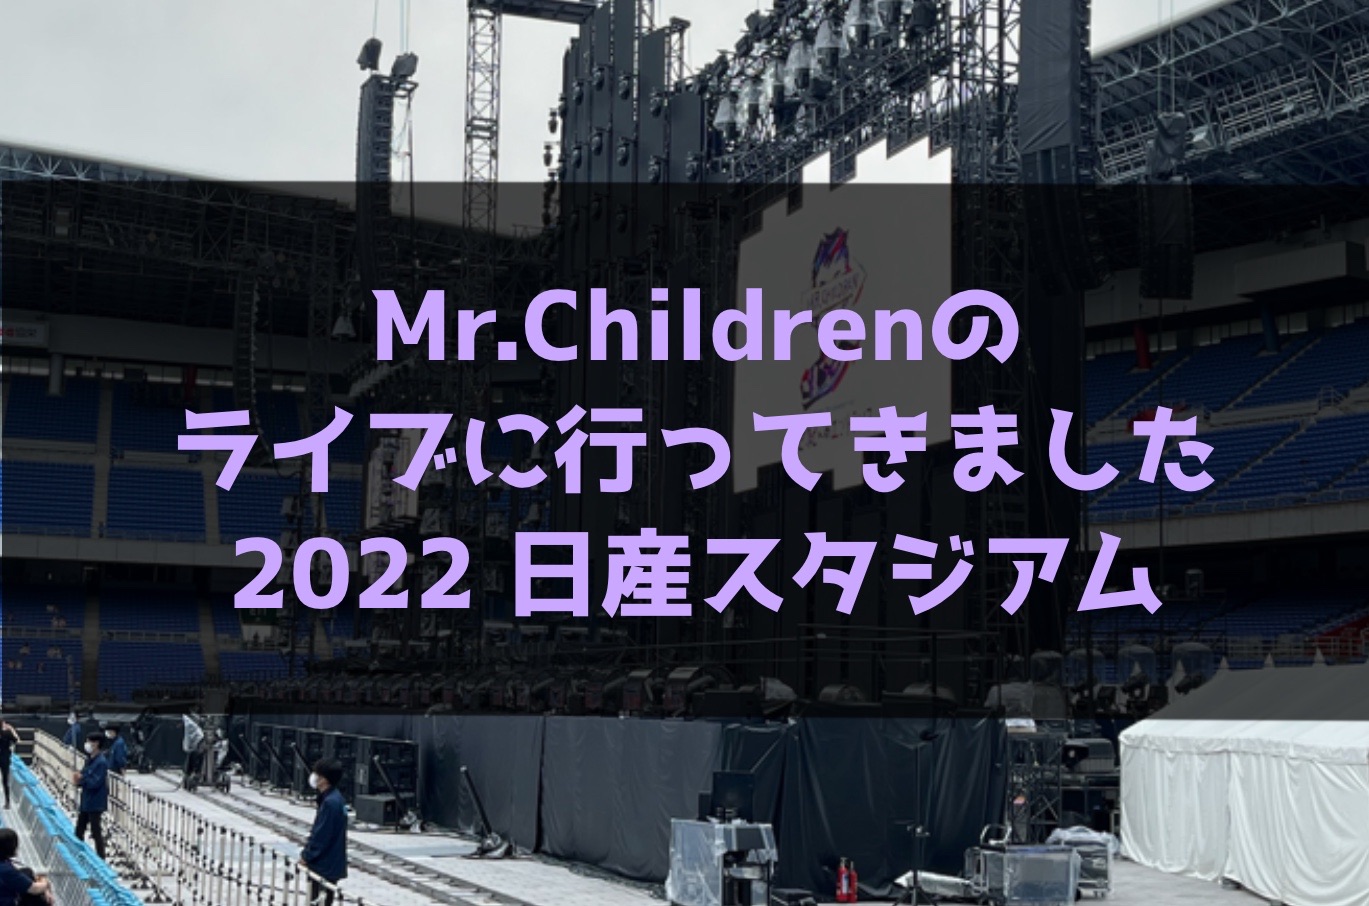 【2022/日産スタジアム】Mr.Childrenのライブに行ってきました【セトリ有り】